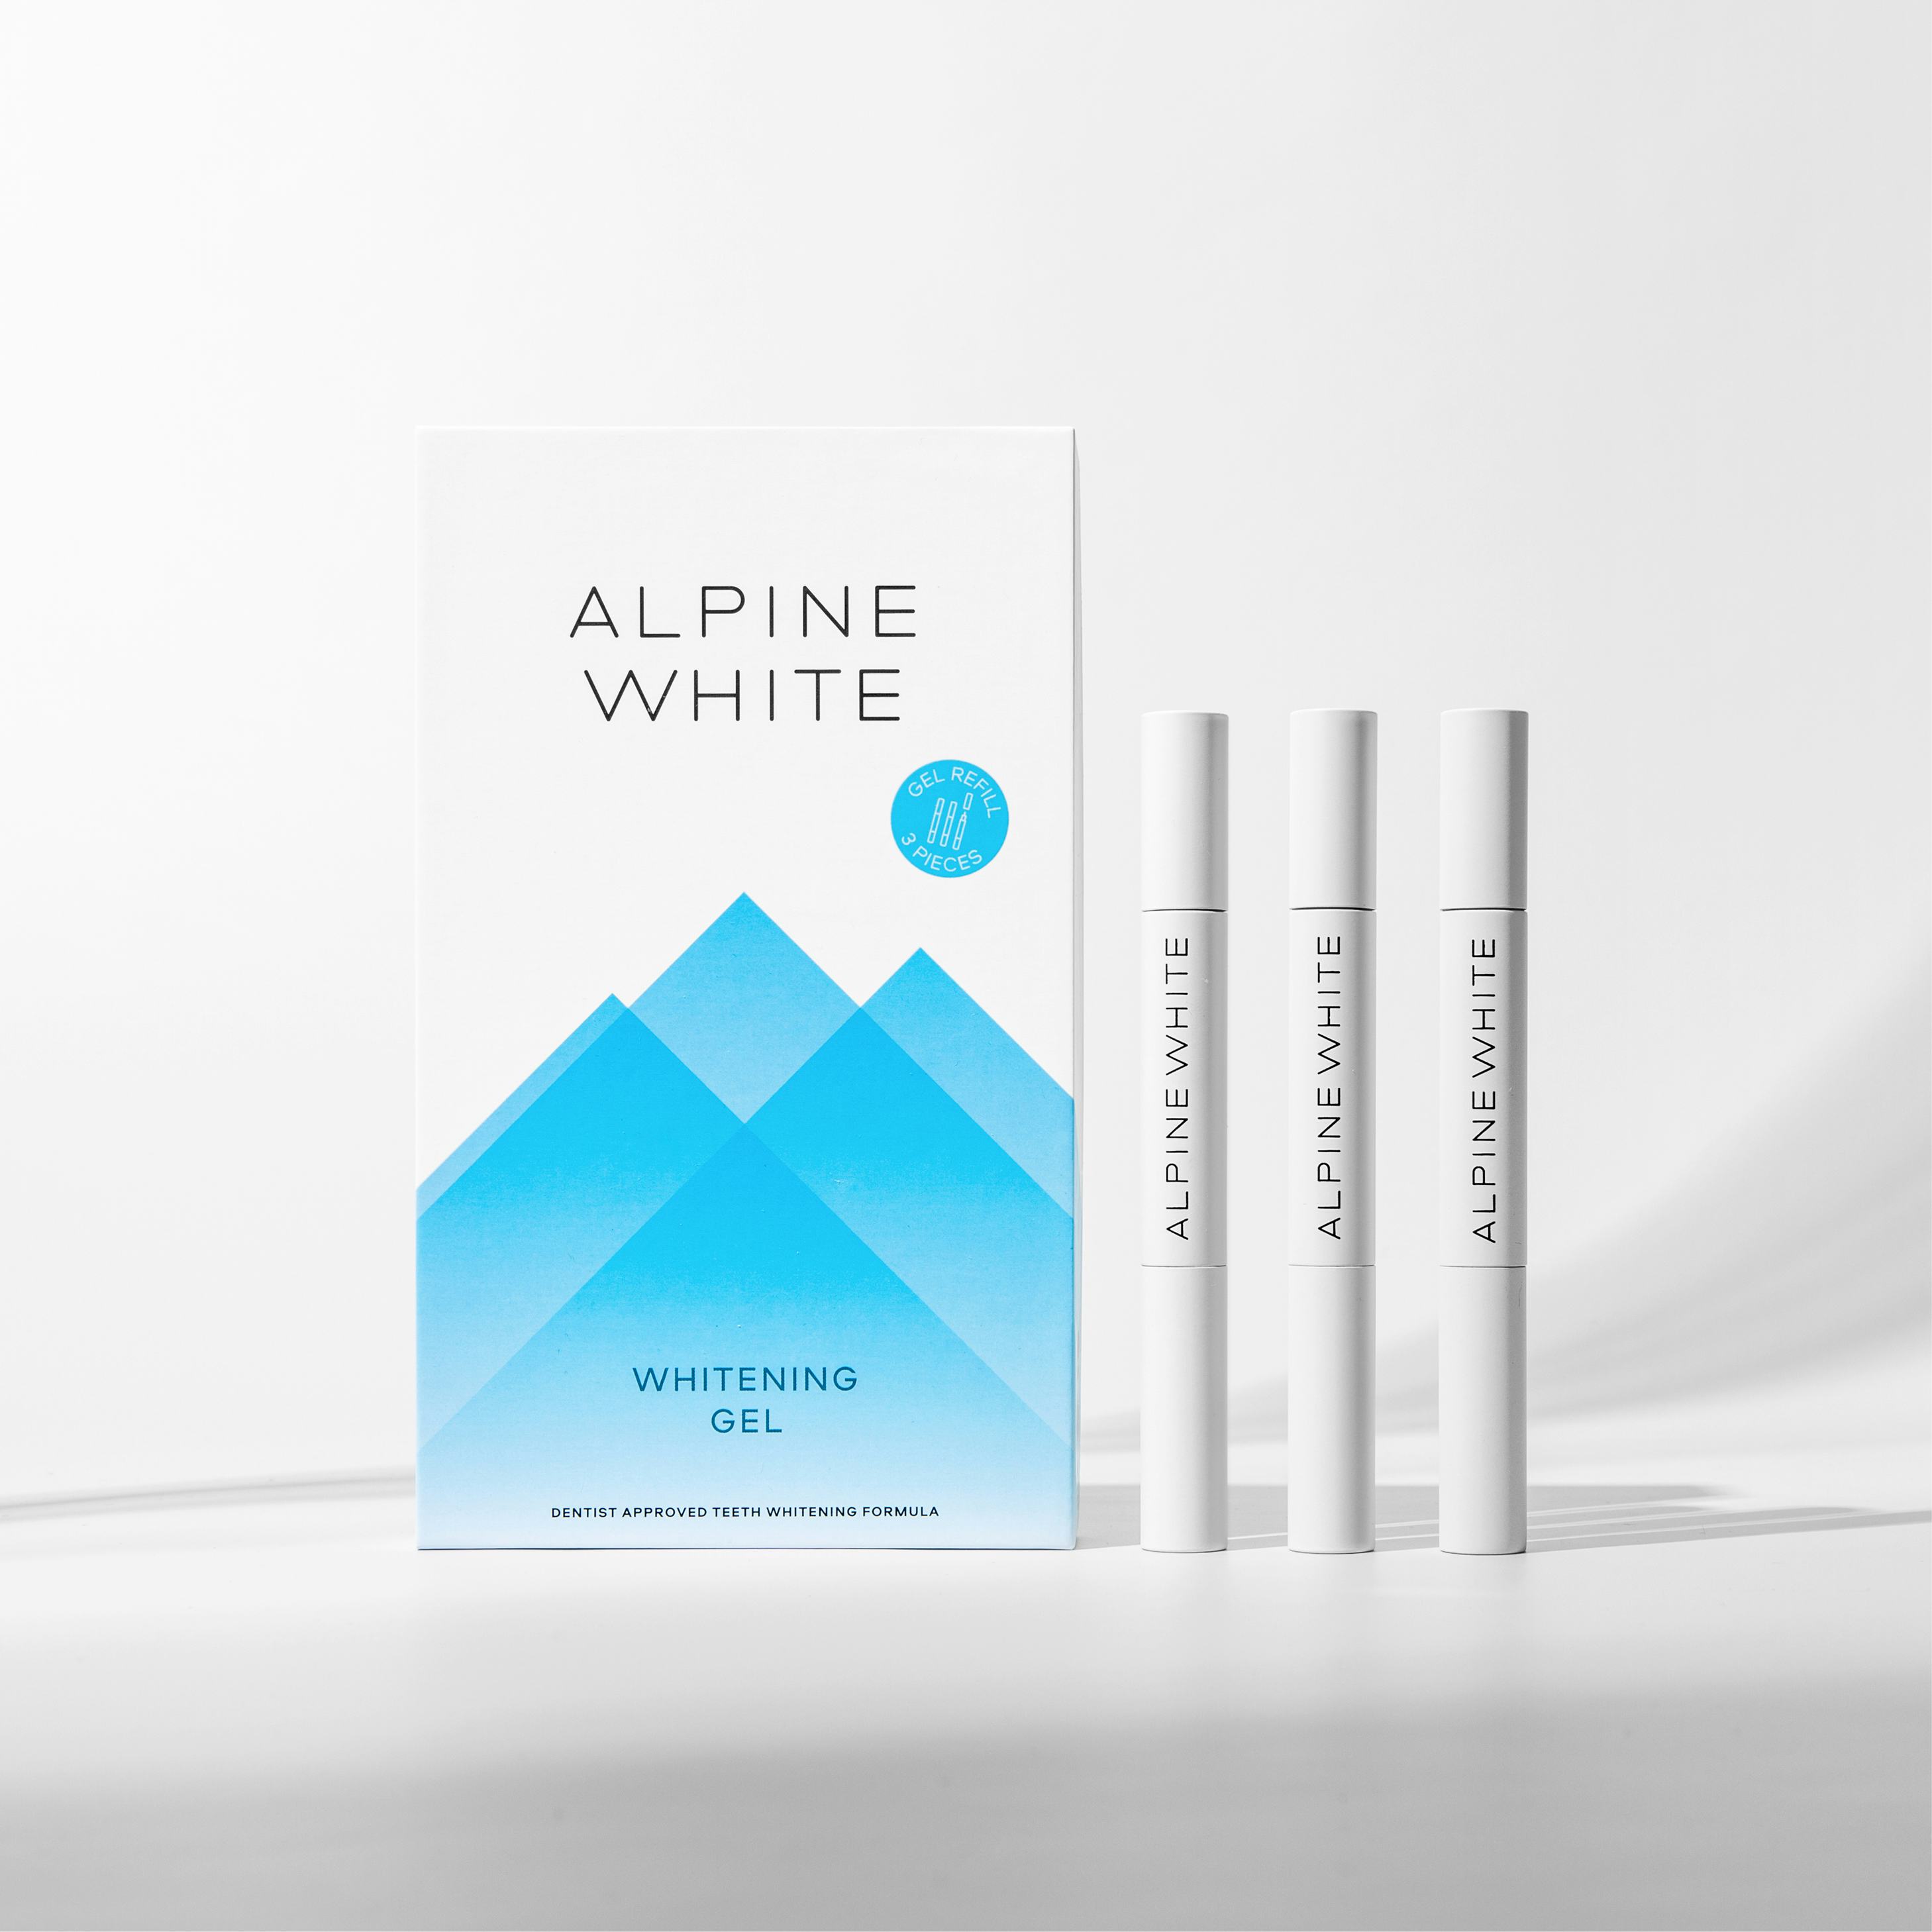 Alpine White Whitening Gel Productshot